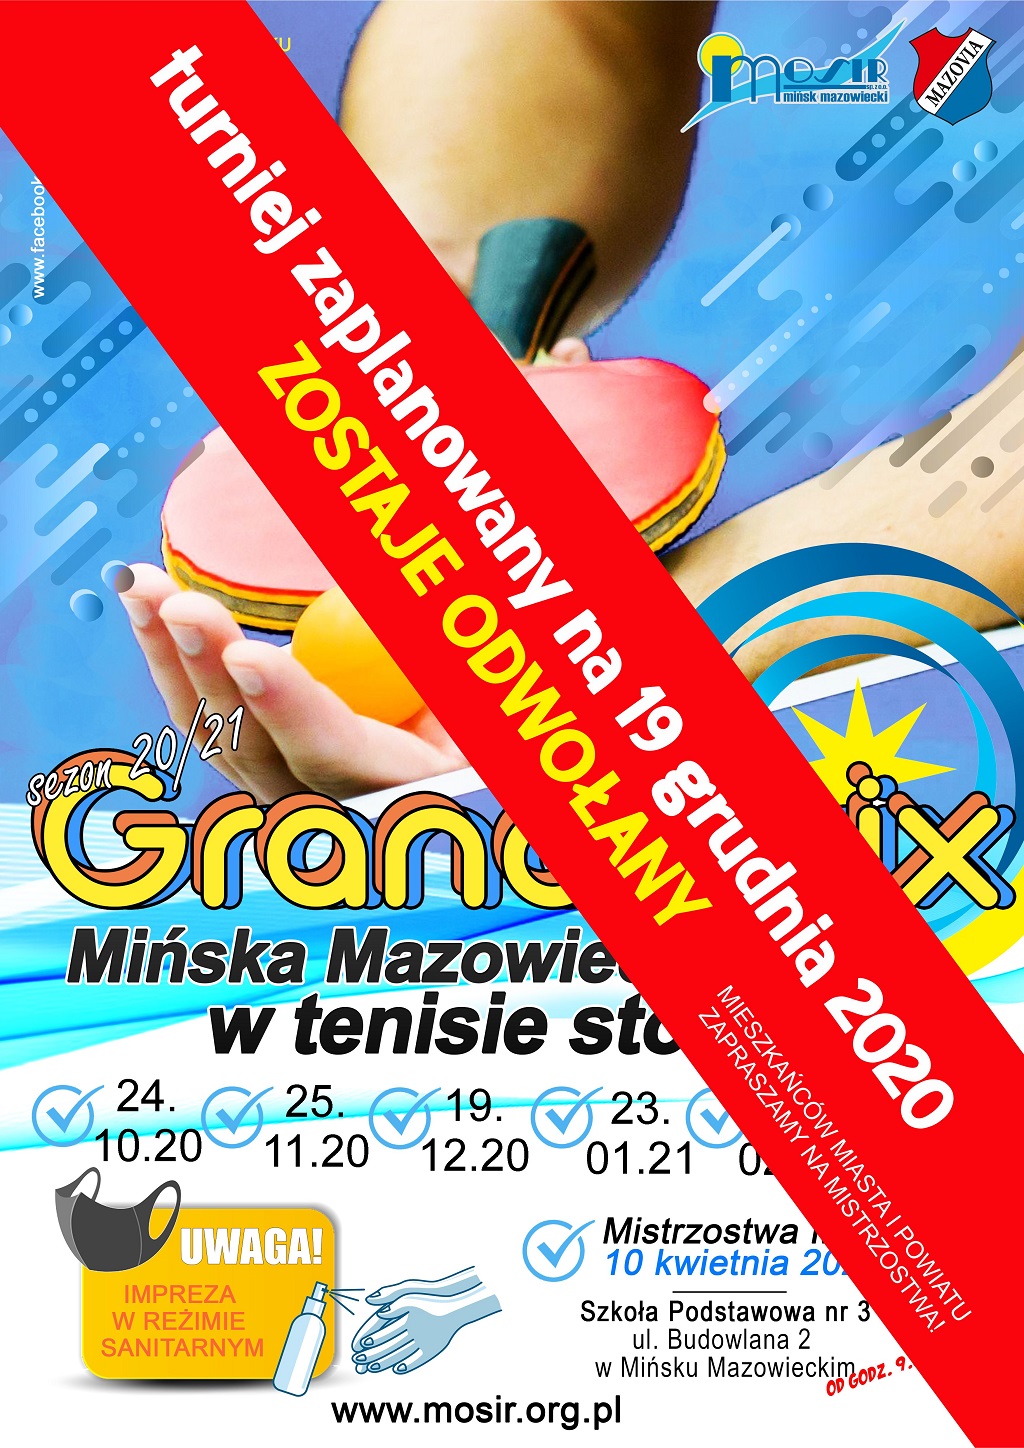 Plakat turnieju Grand Prix Mińska Mazowieckiego w tenisie stołowym w sezonie 2020/2021 - termin 3